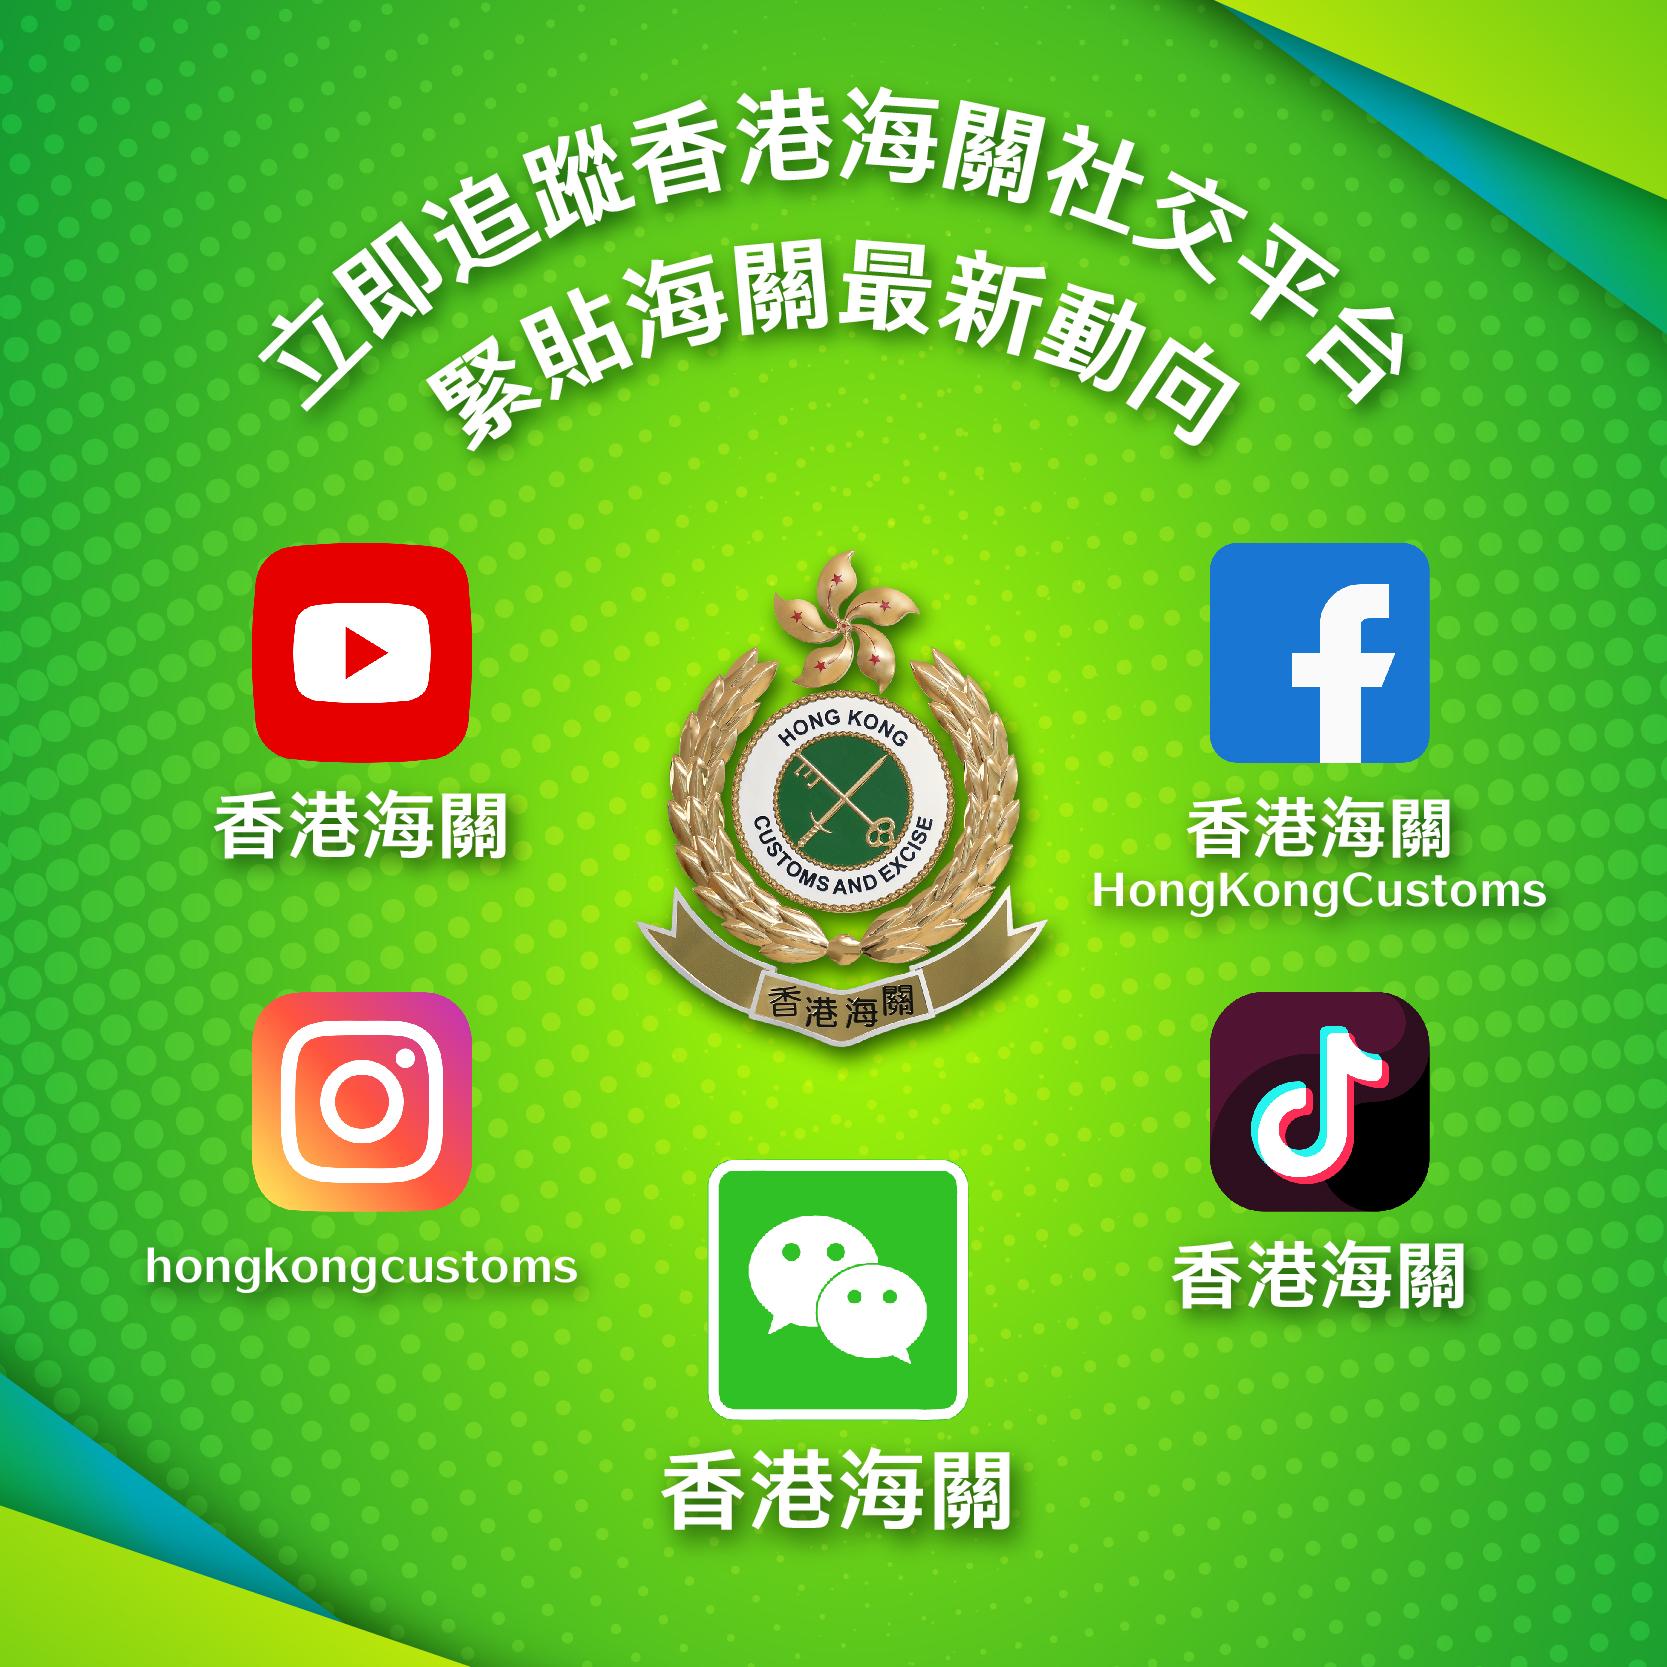 「香港海關」微信官方帳號今日（七月一日）正式啓用，這是繼開設YouTube頻道、Facebook專頁、Instagram帳戶及抖音官方帳號後，新增設的第五個社交媒體官方平台。